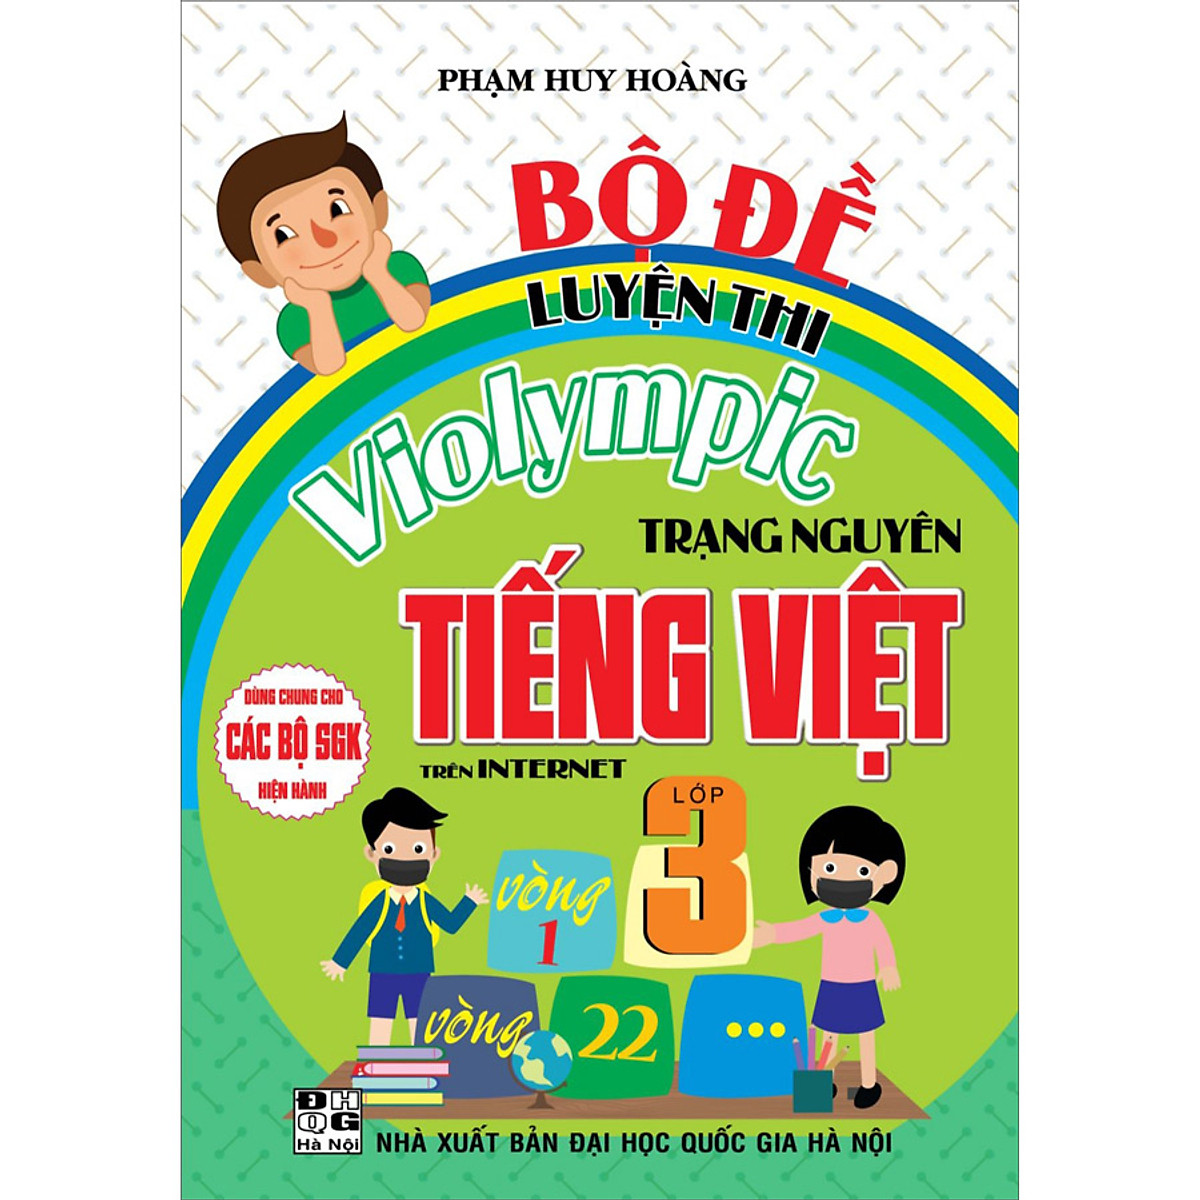 Bộ Đề Luyện Thi Violympic Trạng Nguyên Tiếng Việt Trên Internet Lớp 3 ( HA)